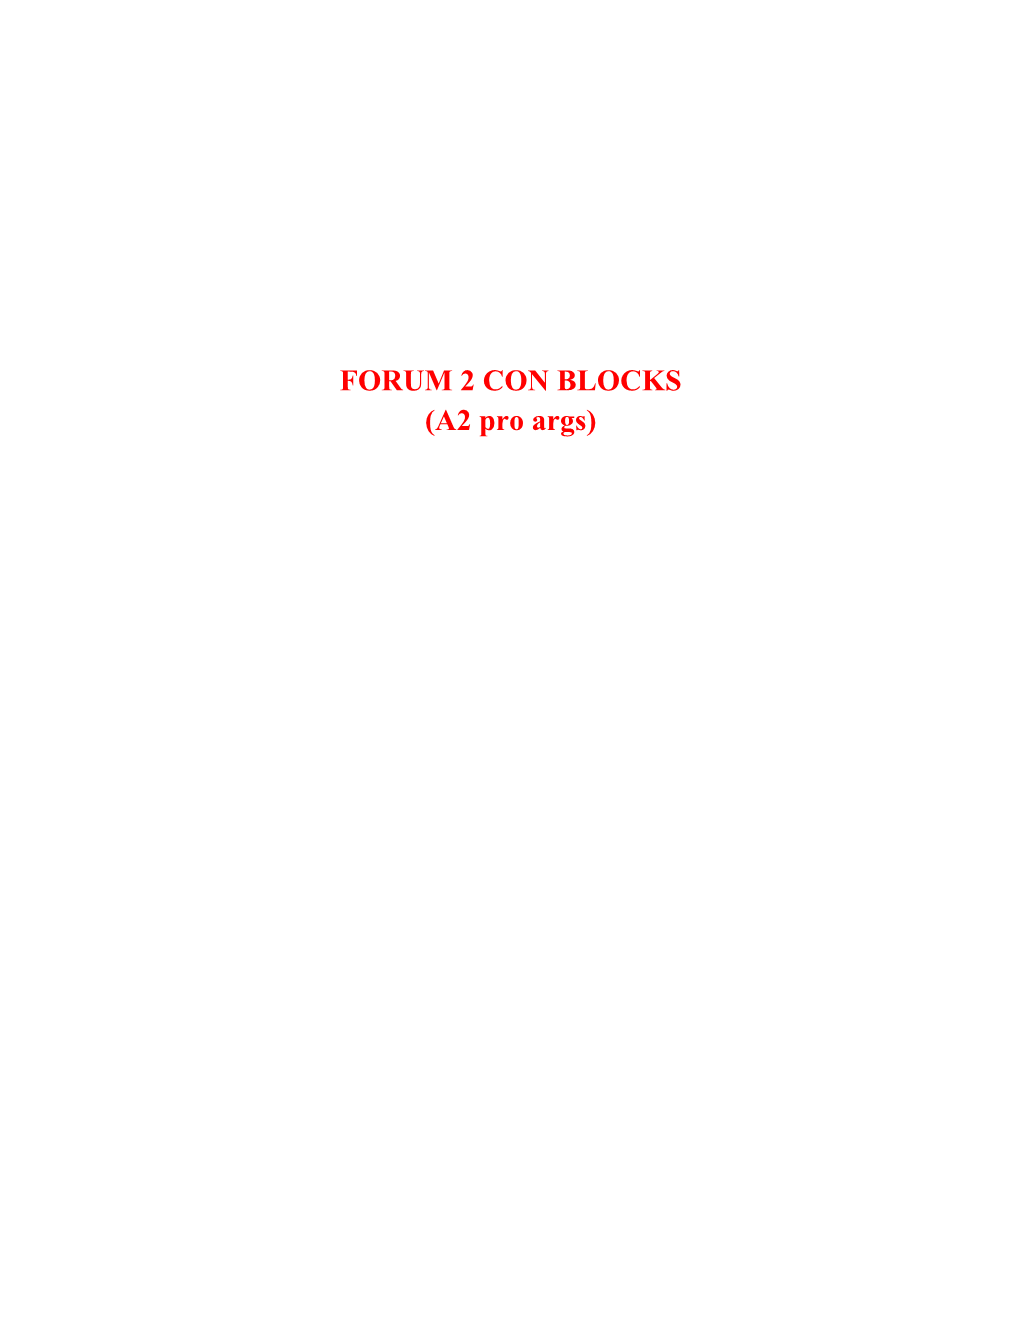 CON BLOCKS (A2 Pro Args)